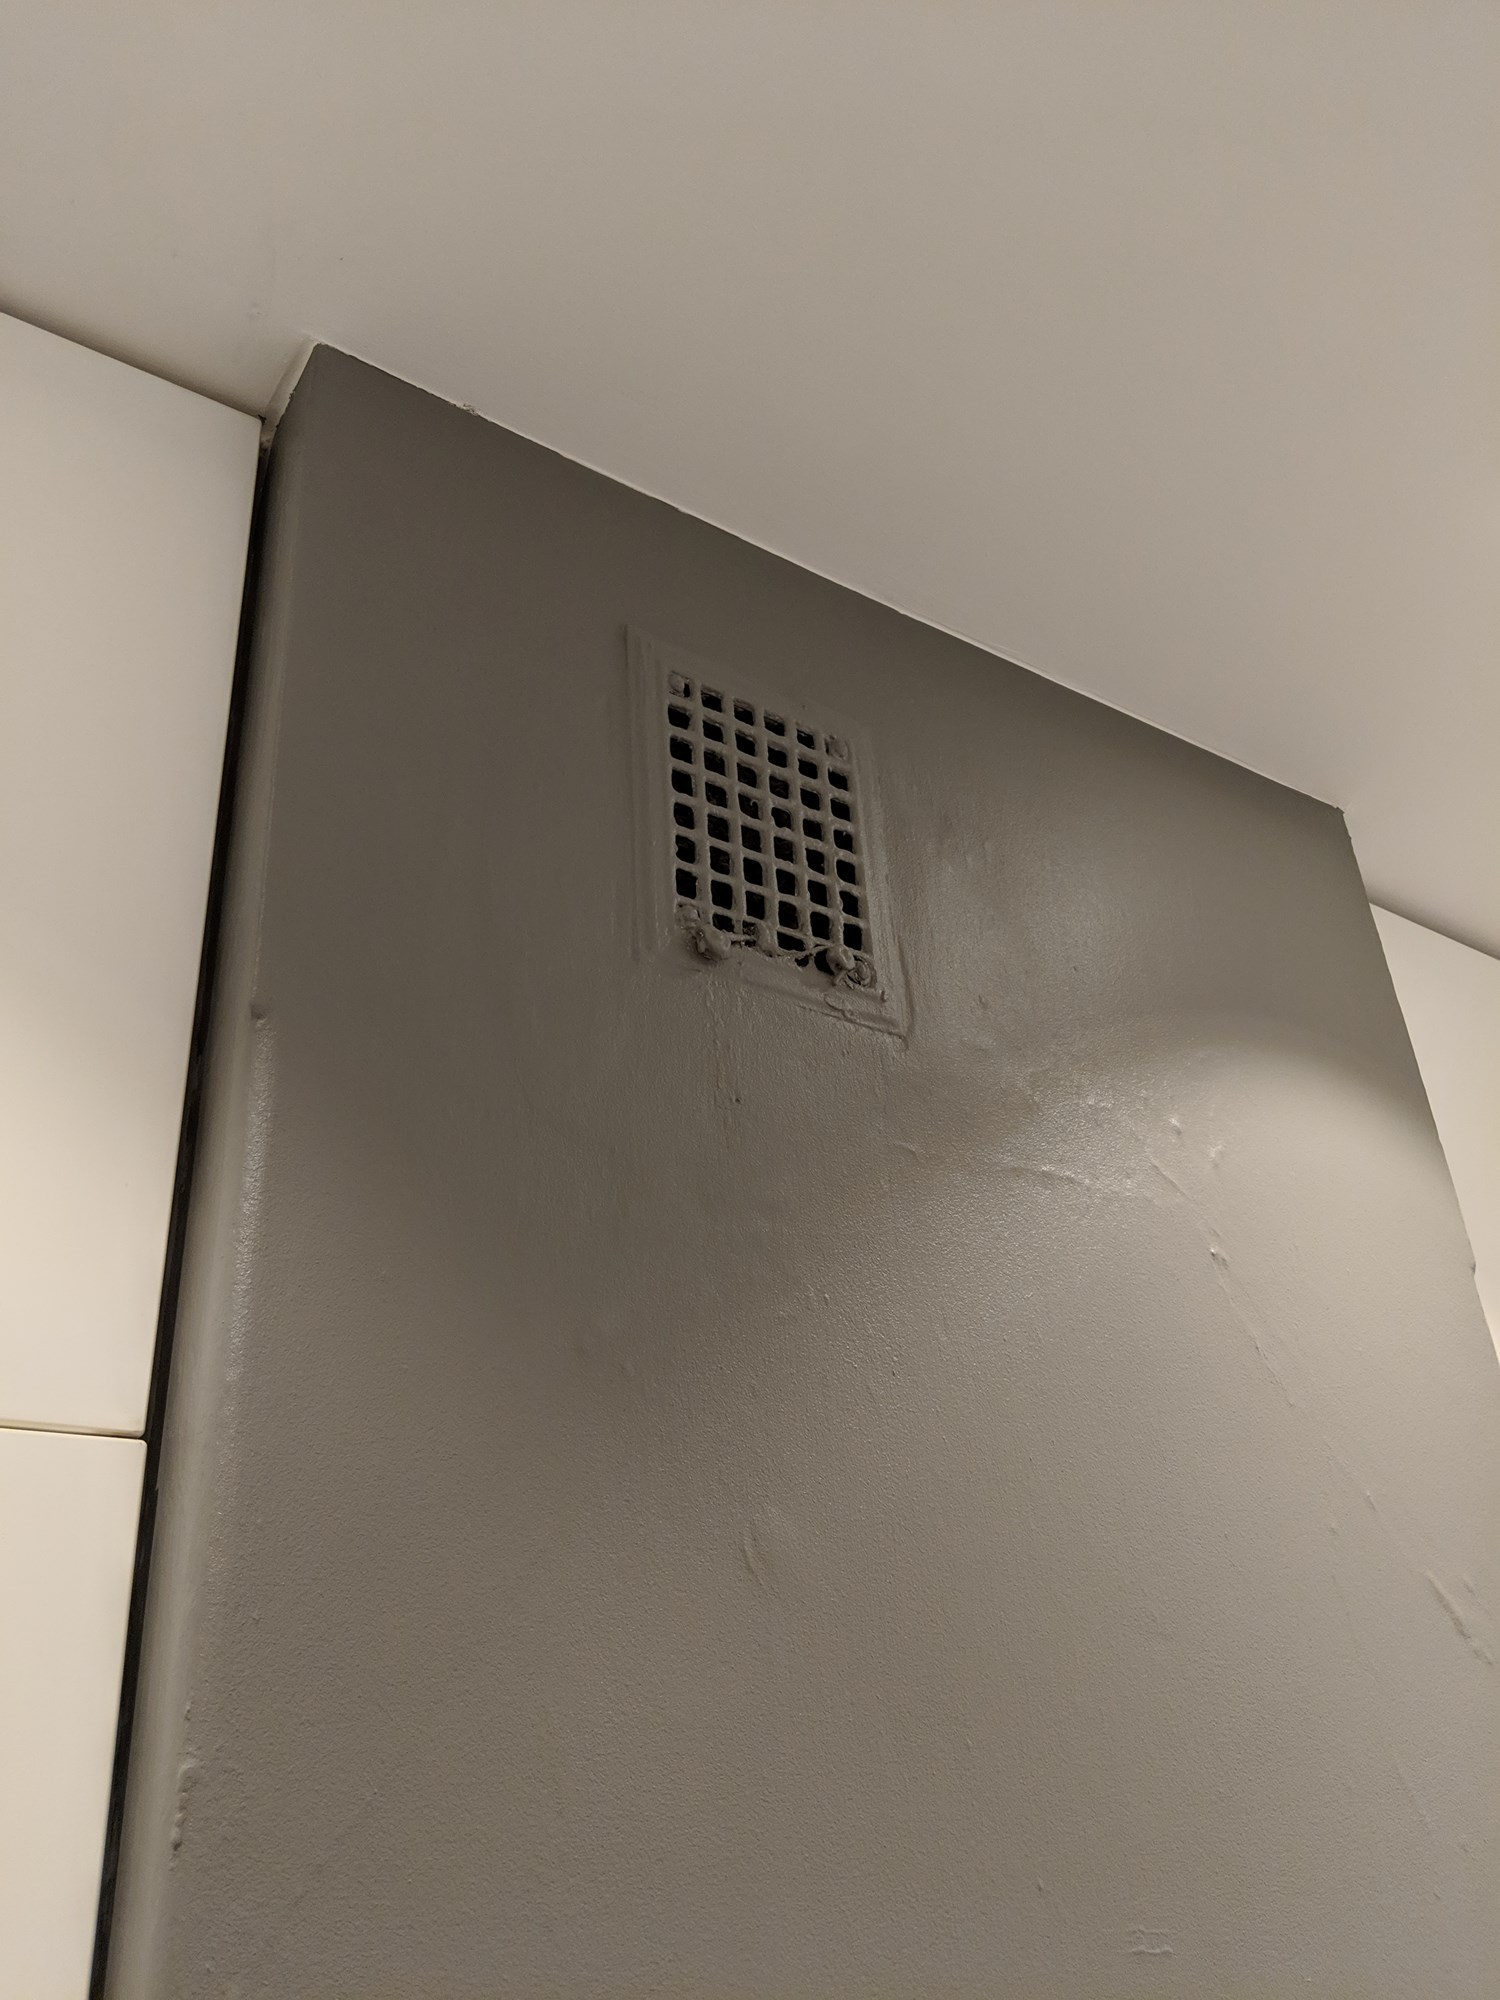 Hva er dette gråstoffet i ventilasjonsrister i kjøkken og i ventilator eksos? - IMG_20181118_124620.jpg - mdn